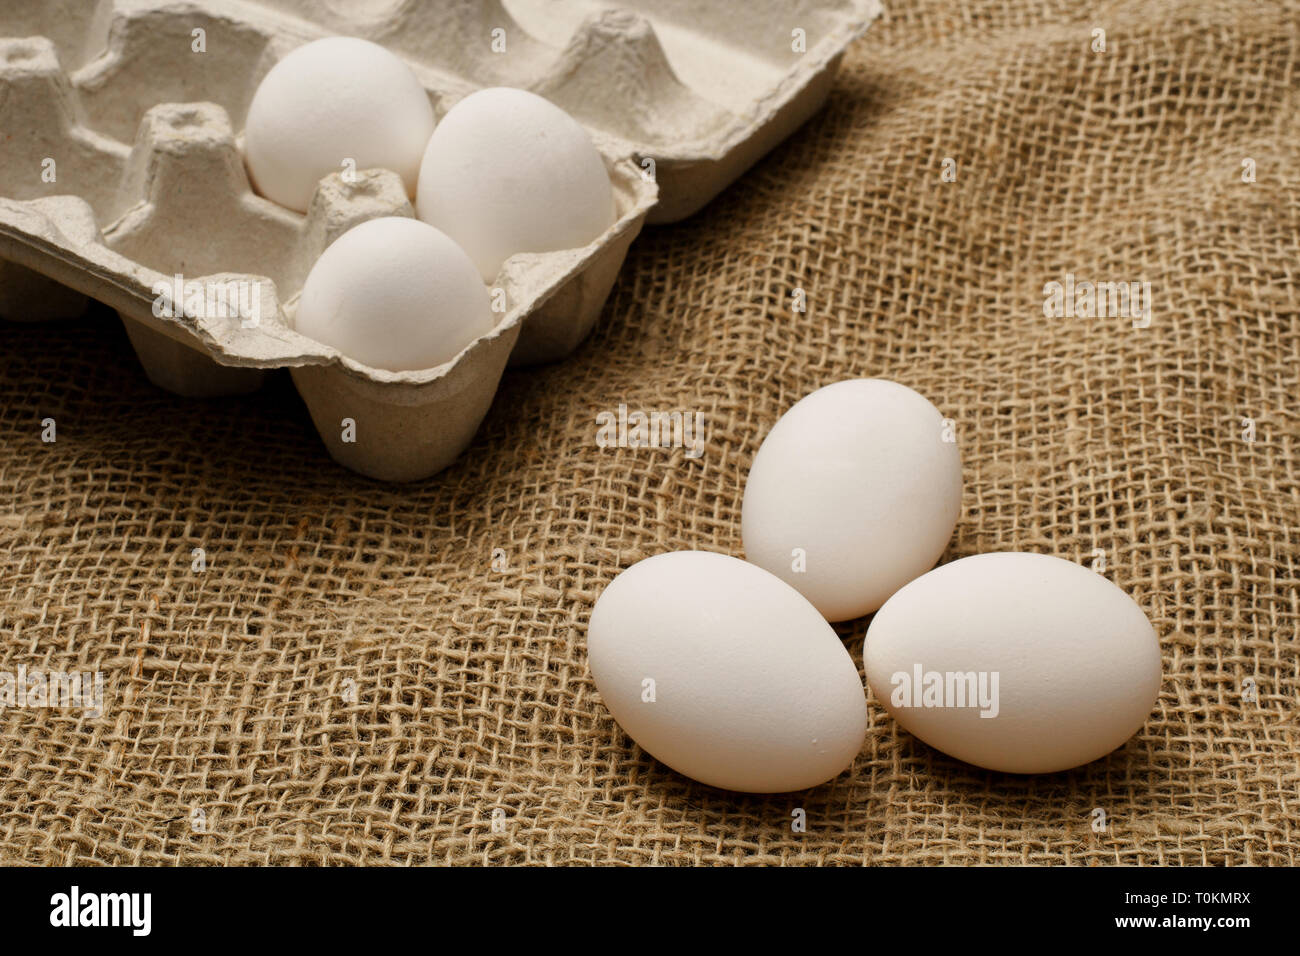 Los huevos y cartón sobre tela de saco de arpillera. Foto de stock